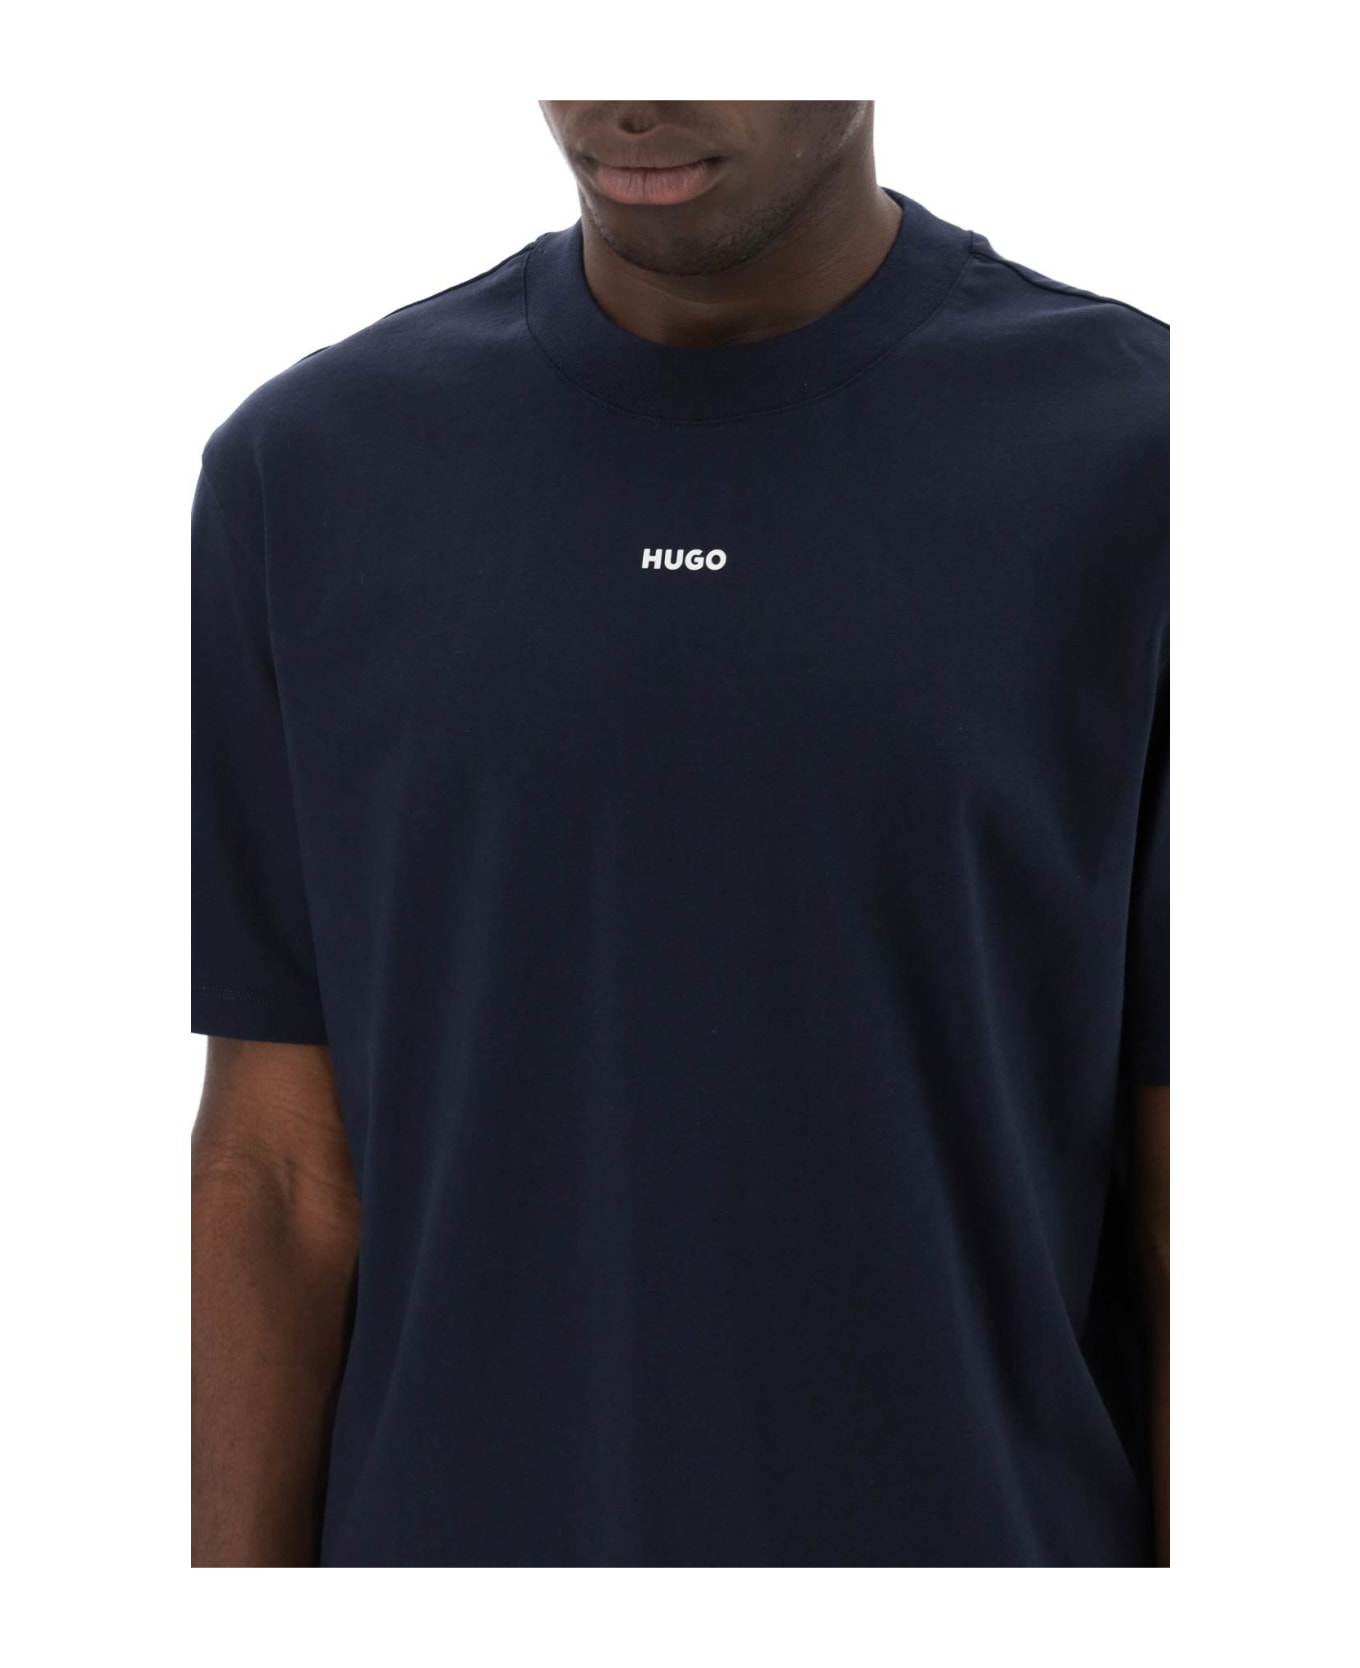 Hugo Boss Dapolino Crew-neck T-shirt - DARK BLUE (Black)